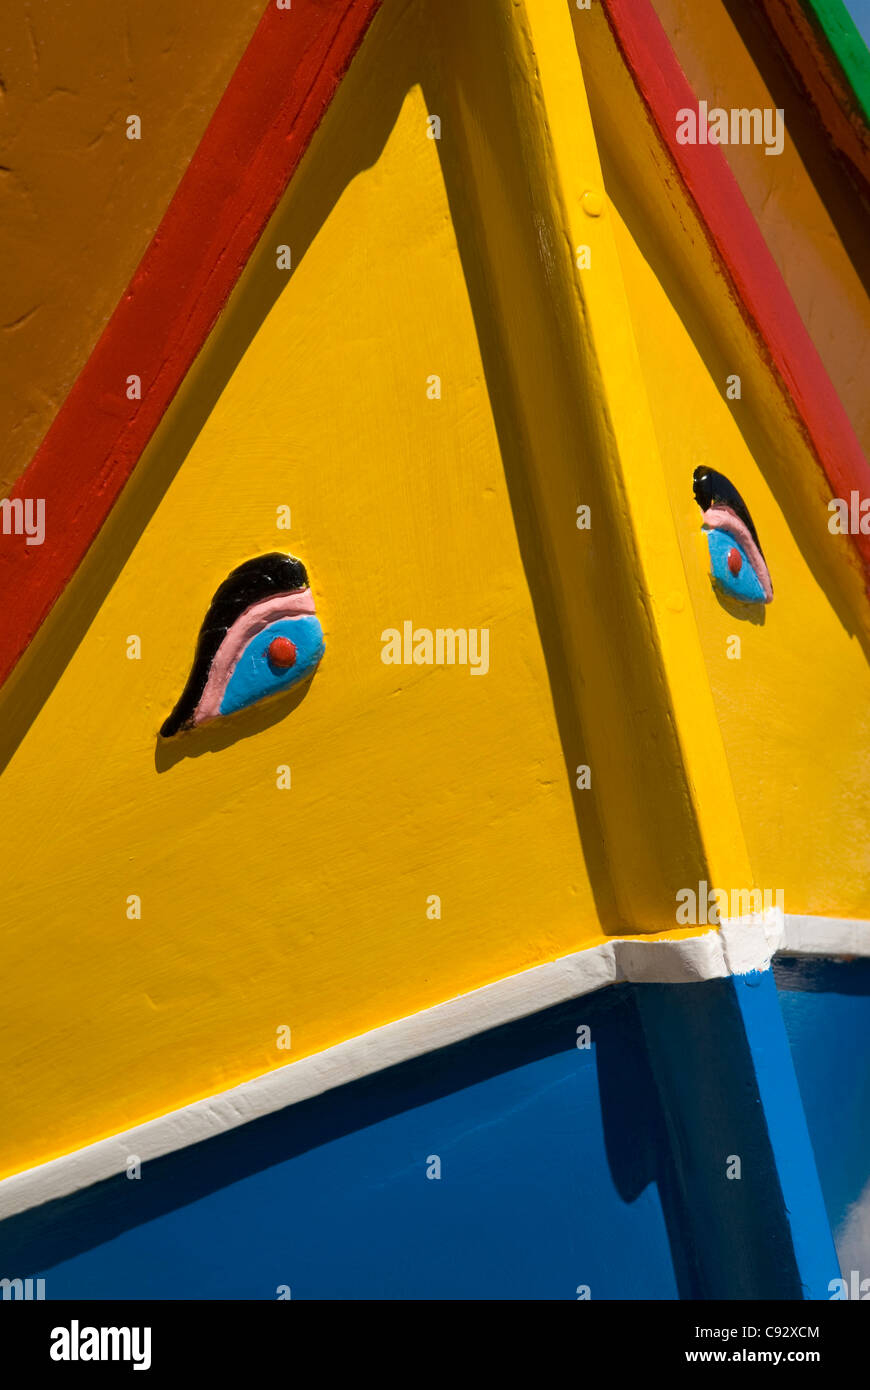 Tradizionalmente le barche dipinte a Malta hanno occhi dipinti sulla poppa e colori luminosi per allontanare gli spiriti maligni. Foto Stock